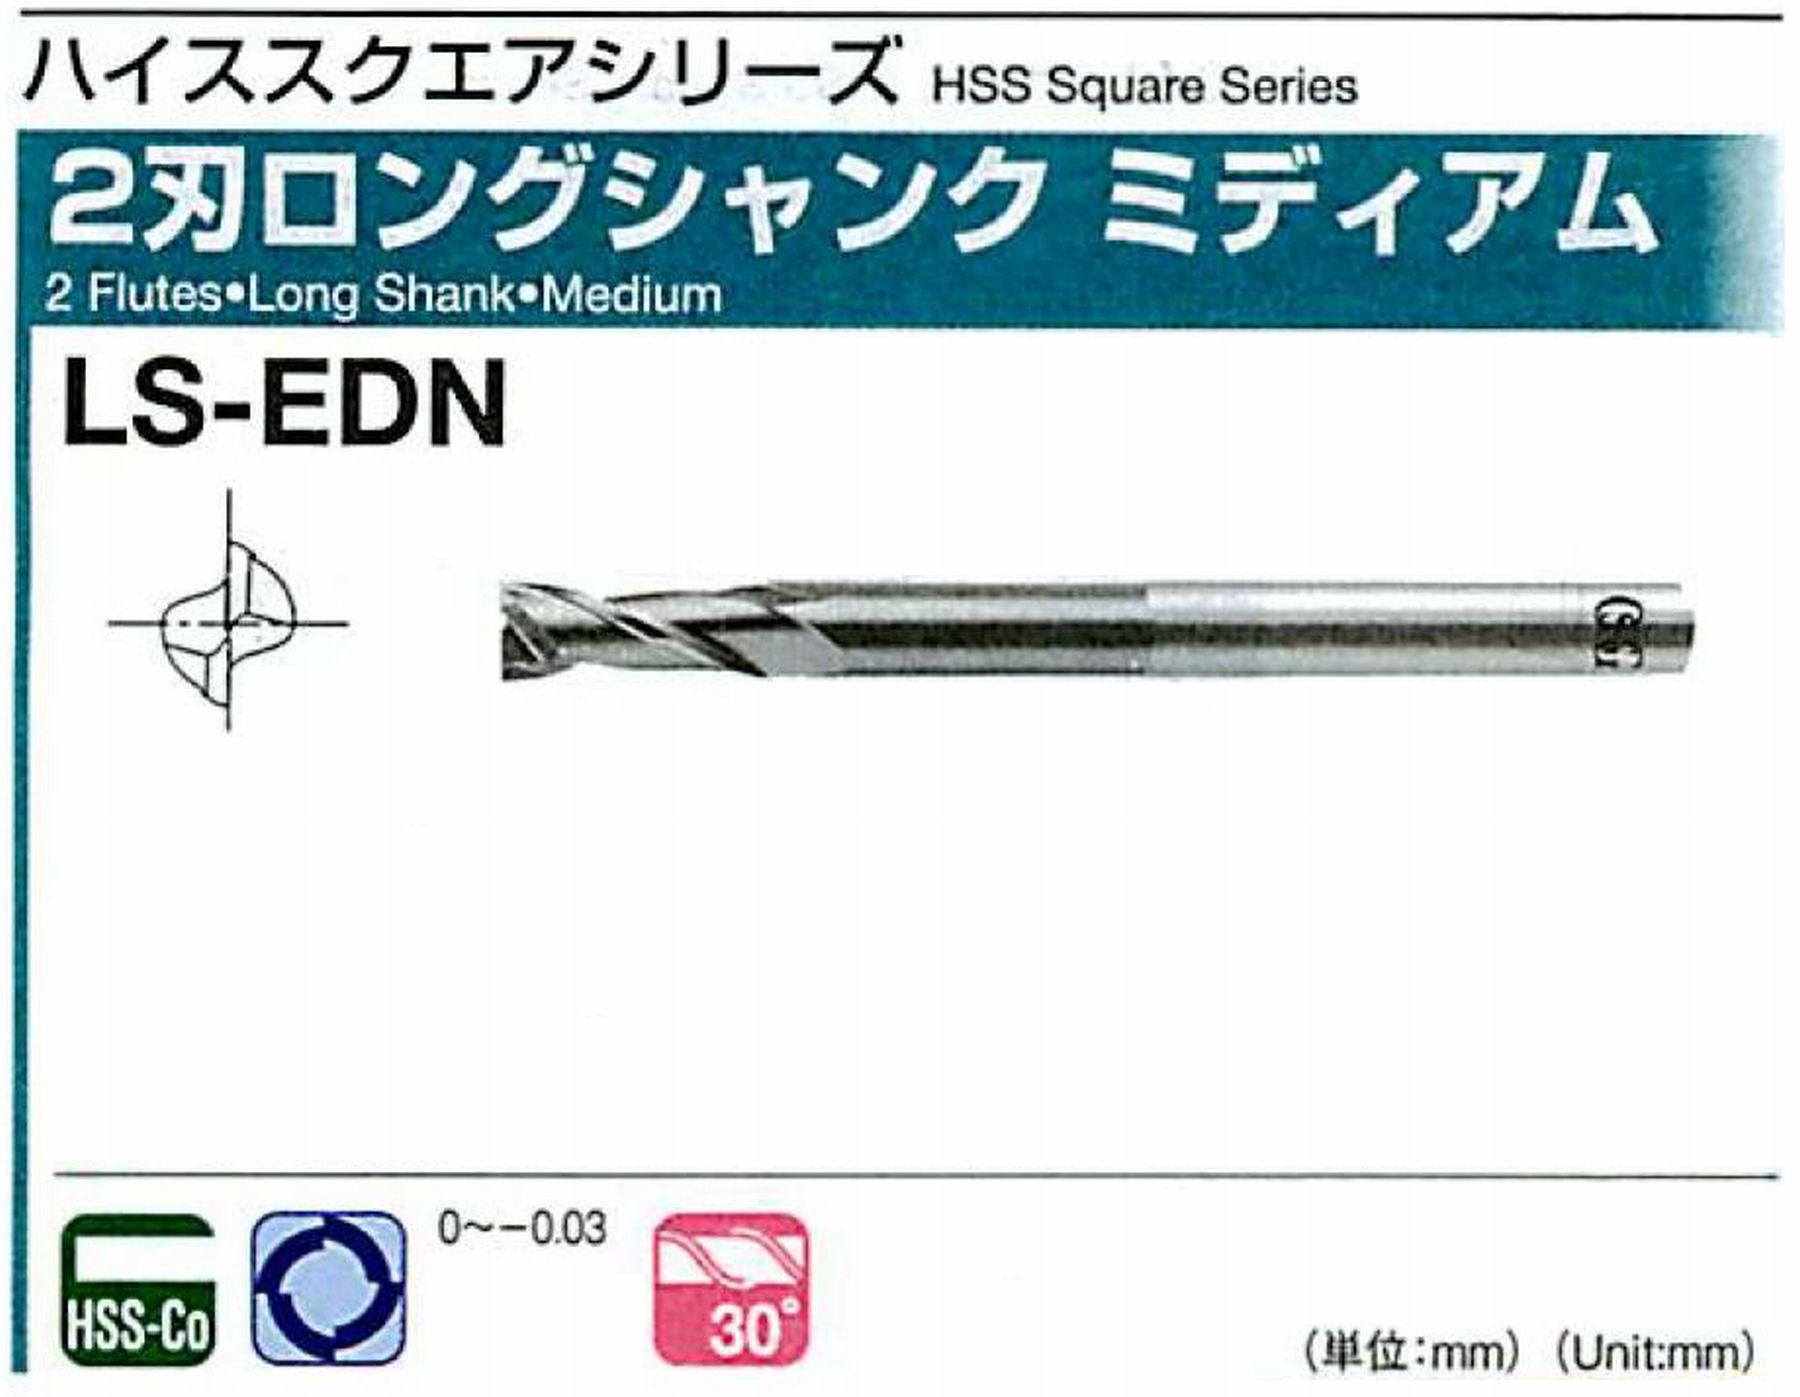 オーエスジー/OSG 2刃ロングシャンク ミディアム LS-EDN 外径28 全長220 刃長55 シャンク径25mm